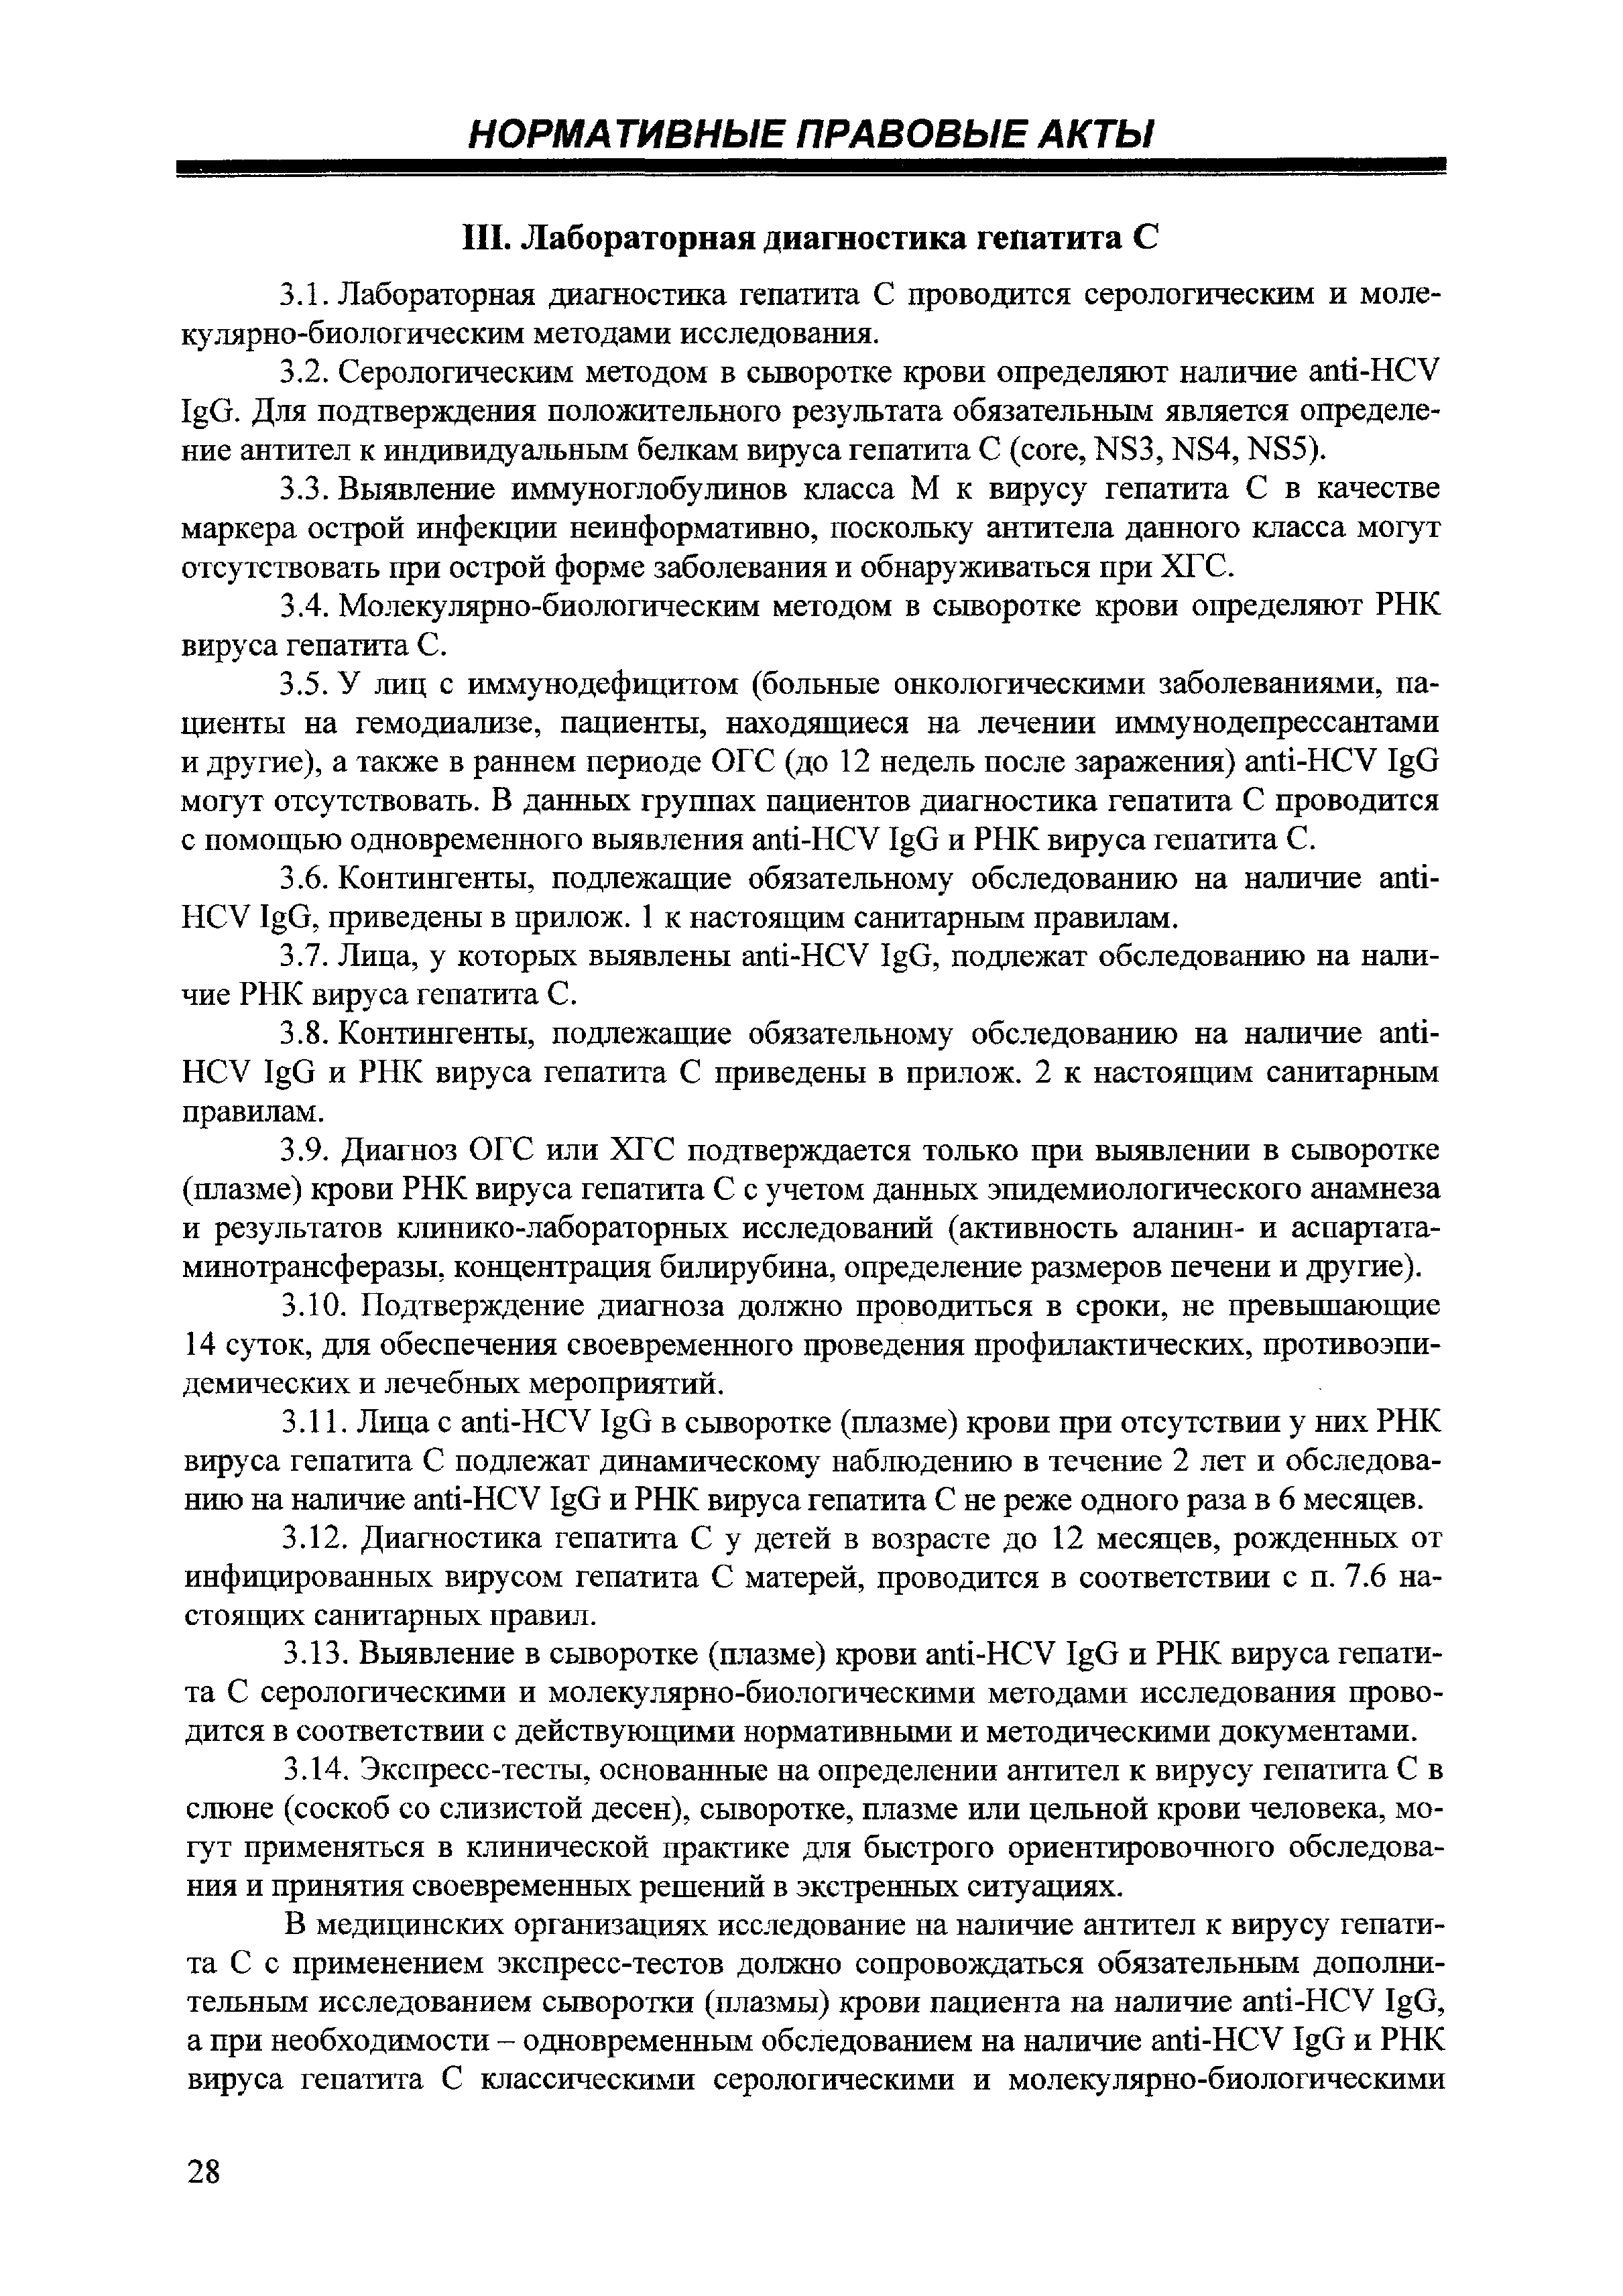 СП 3.1.3112-13